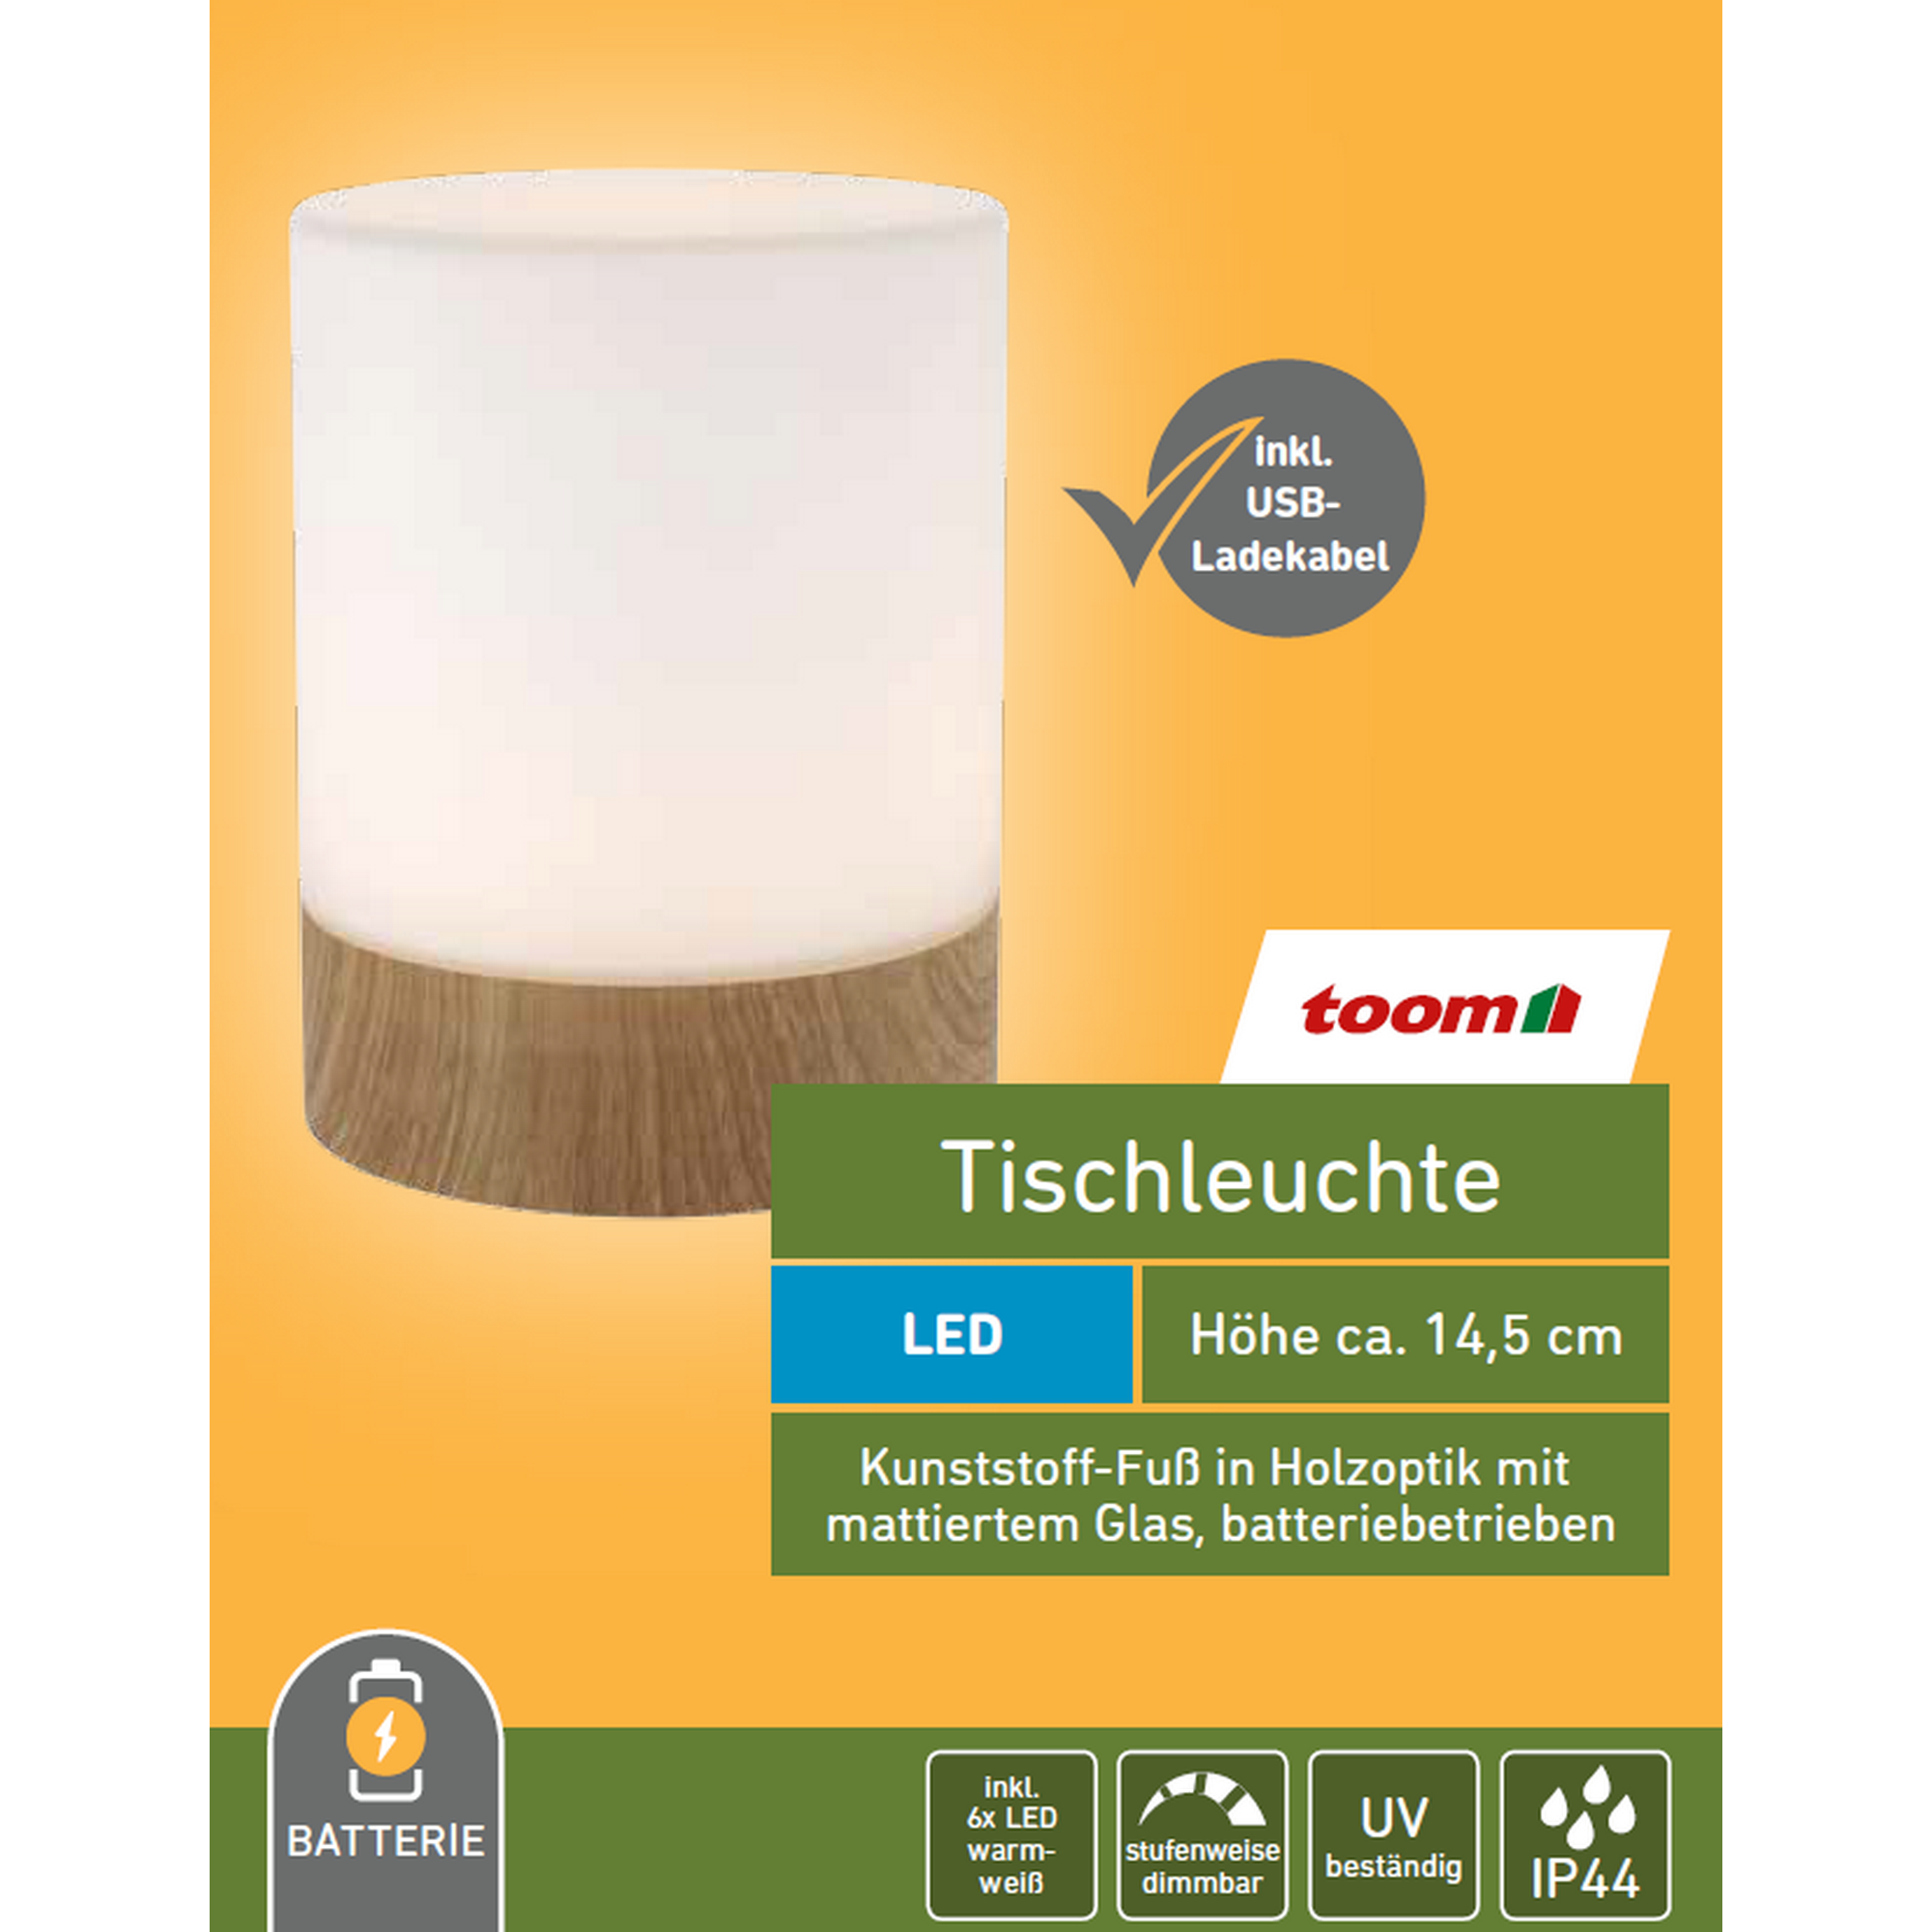 LED-Tischleuchte weiß/braun Ø 11 x 14,5 cm + product picture